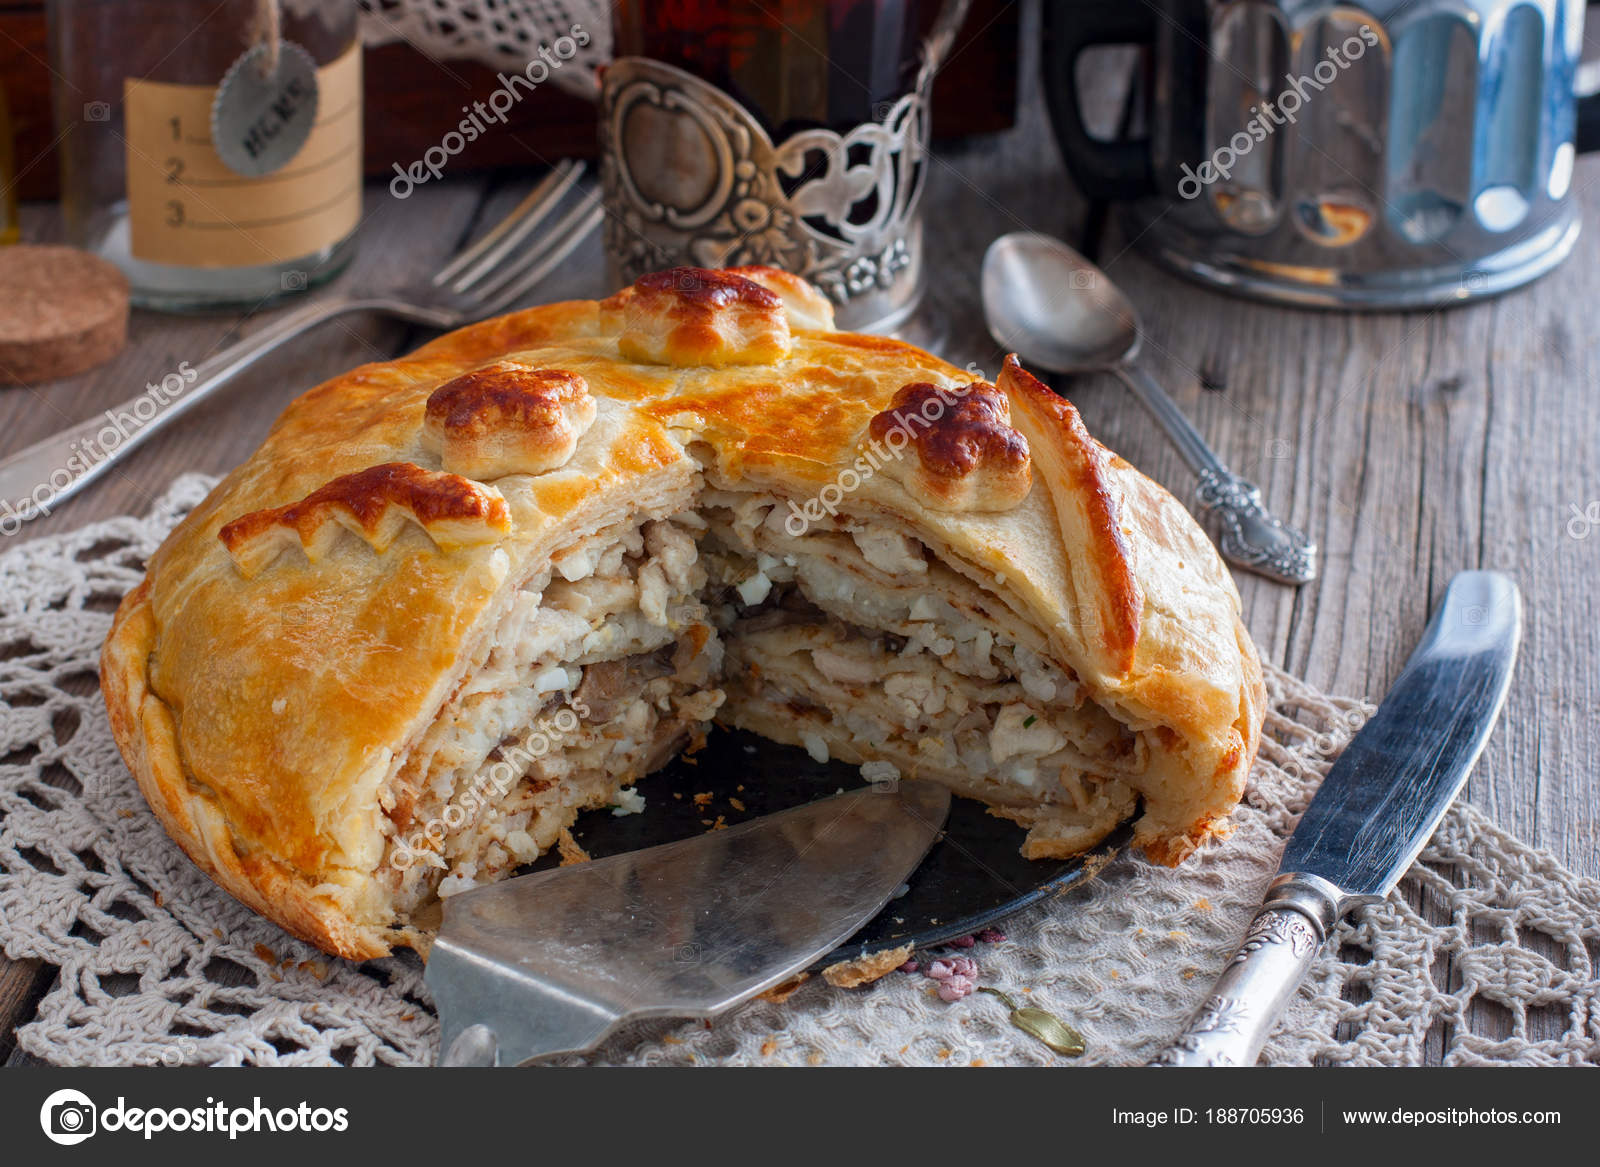 Traditional Russian pancakes pie - kurnik. Stock Photo